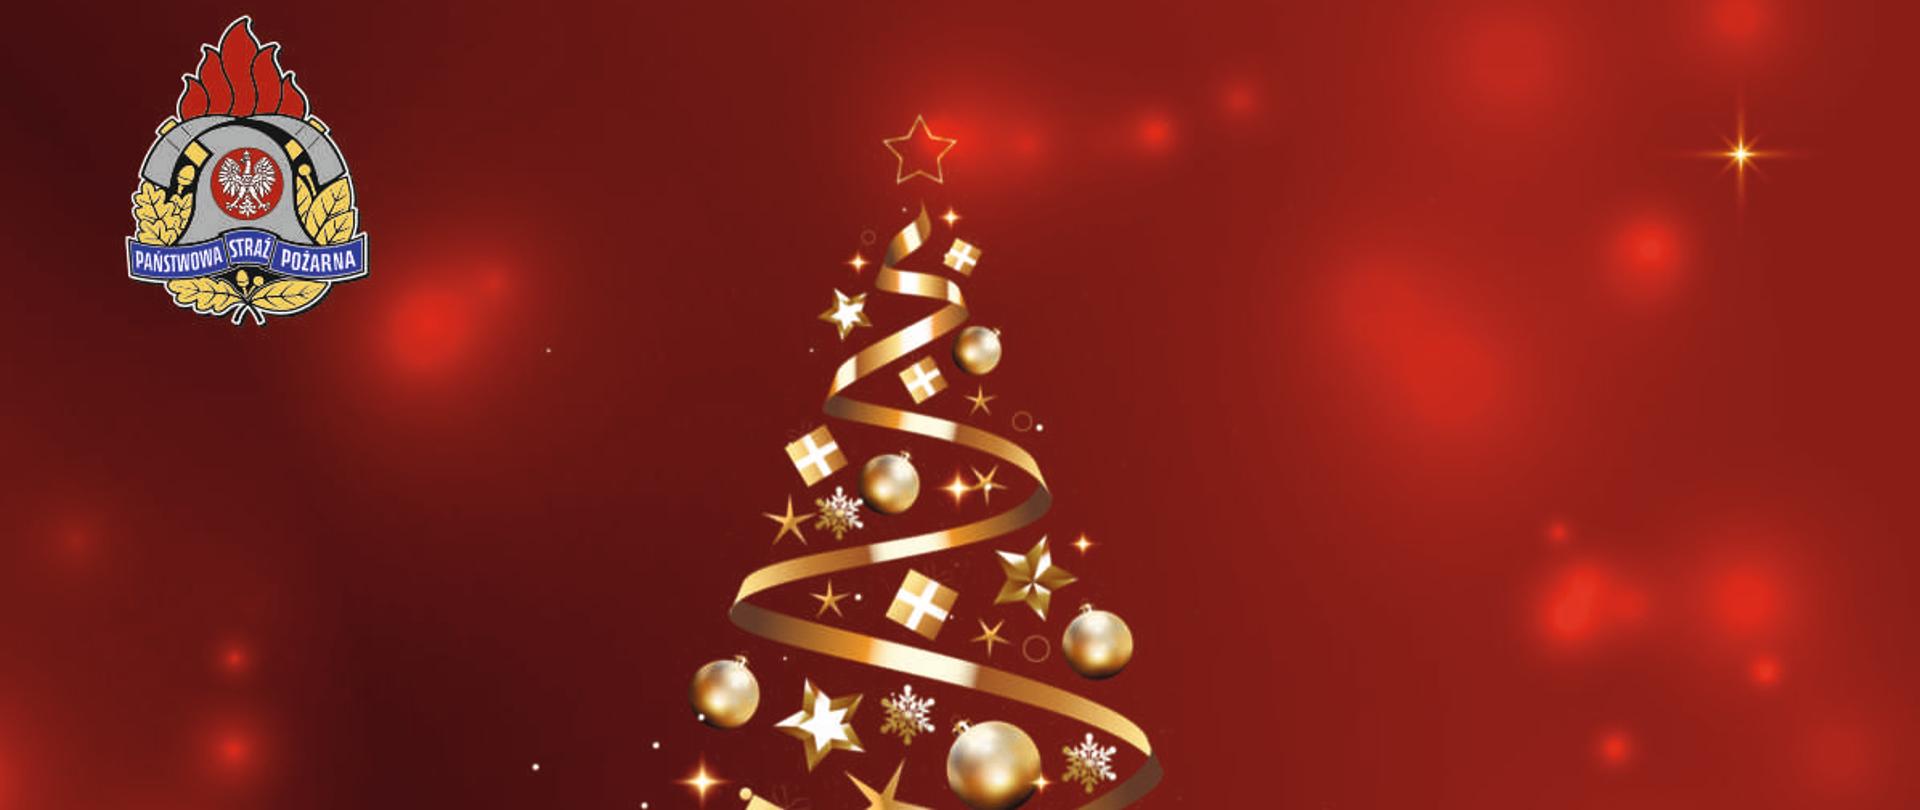 kartka świąteczna - na czerwonym tle złota choinka oraz logo PSP, poniżej tekst Wesołych Świąt